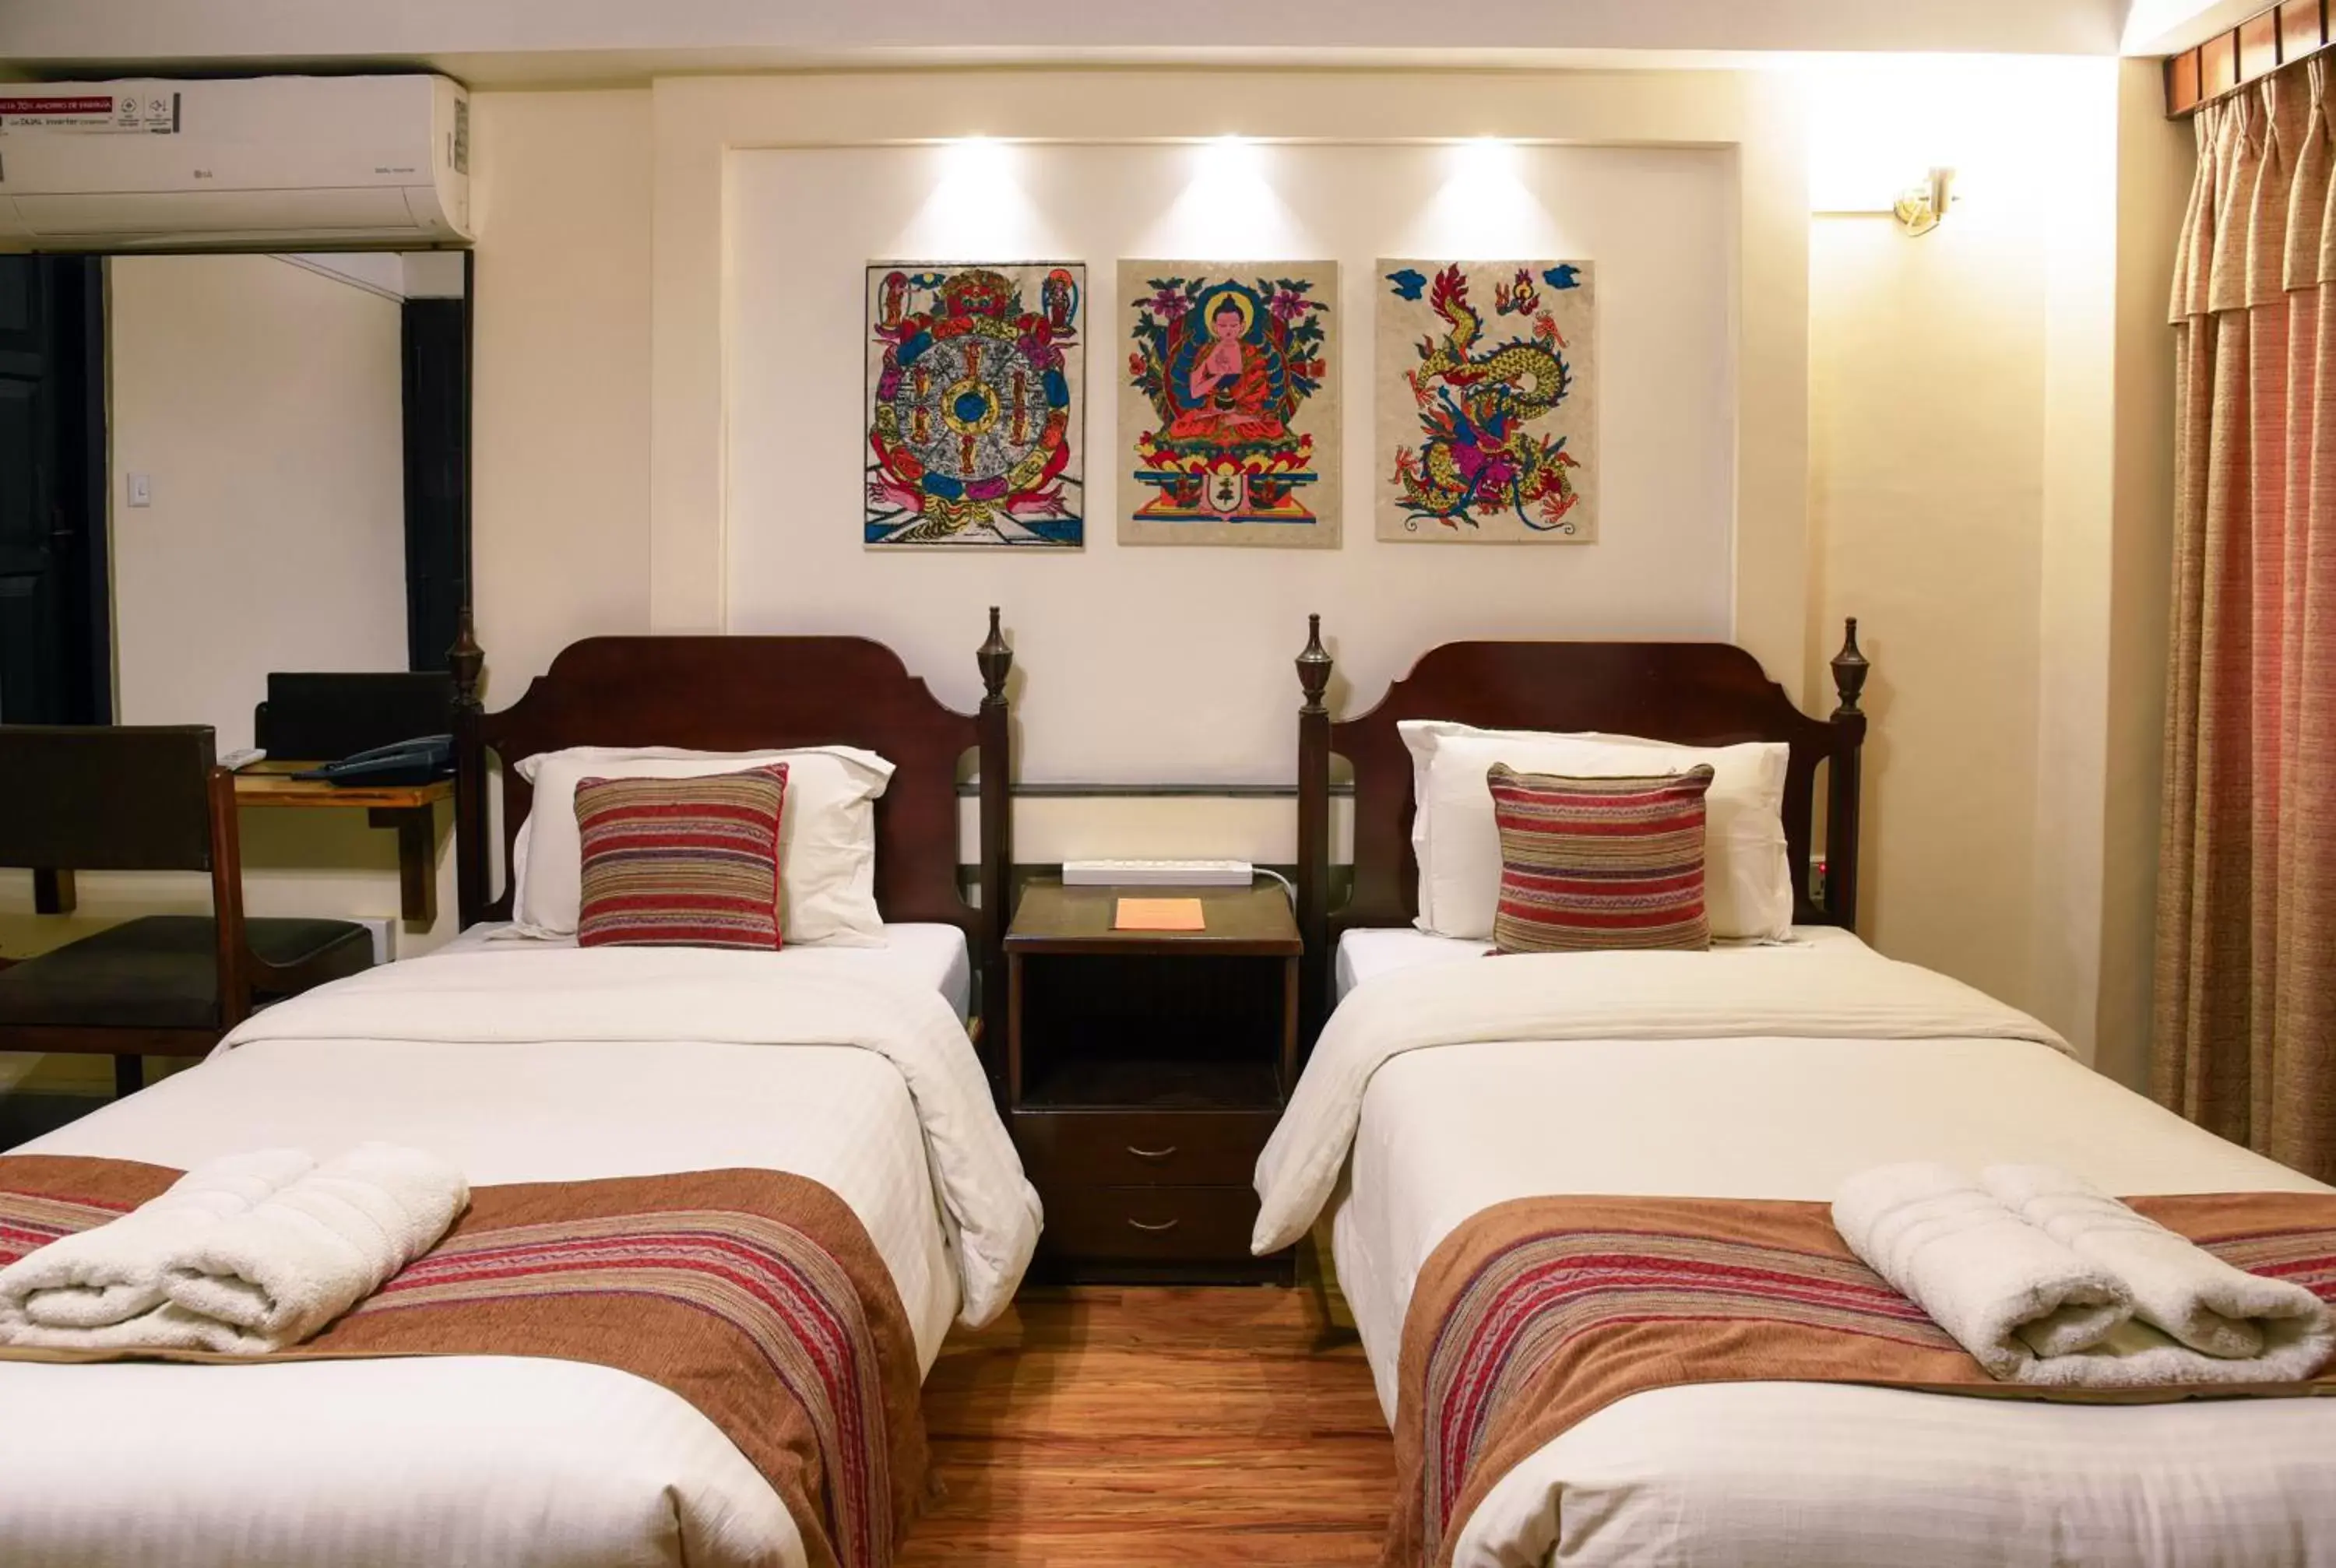 Bed in Nepal Pavilion Inn